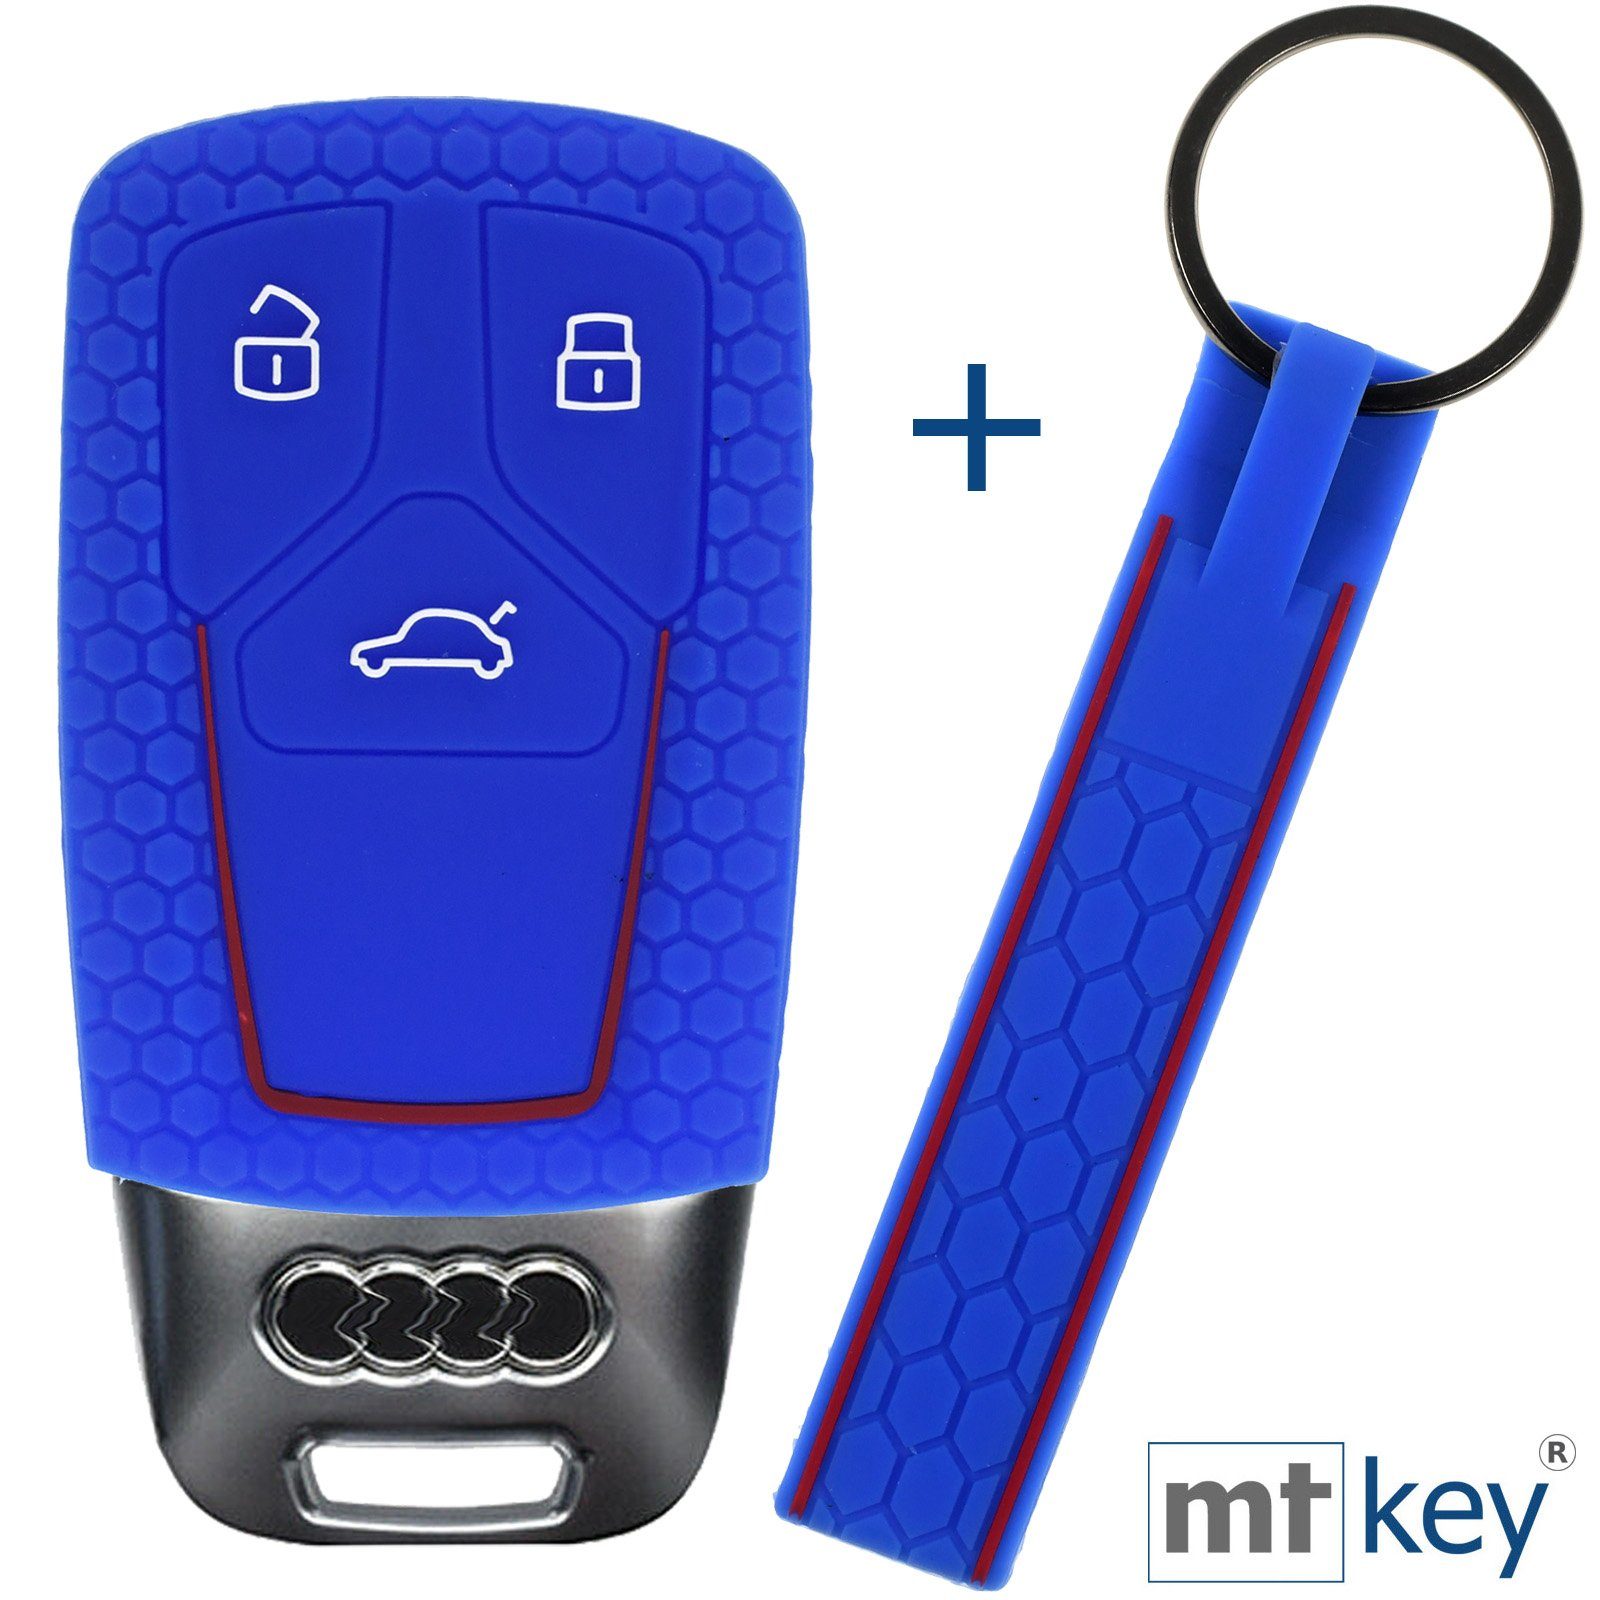 A4 Schutzhülle Silikon A7 Q2 Autoschlüssel A5 Tasten Wabe KEYLESS Blau Q5 + Schlüsselband, Q7 Audi Q8 3 Schlüsseltasche A6 TT im mt-key A8 Design SMARTKEY für